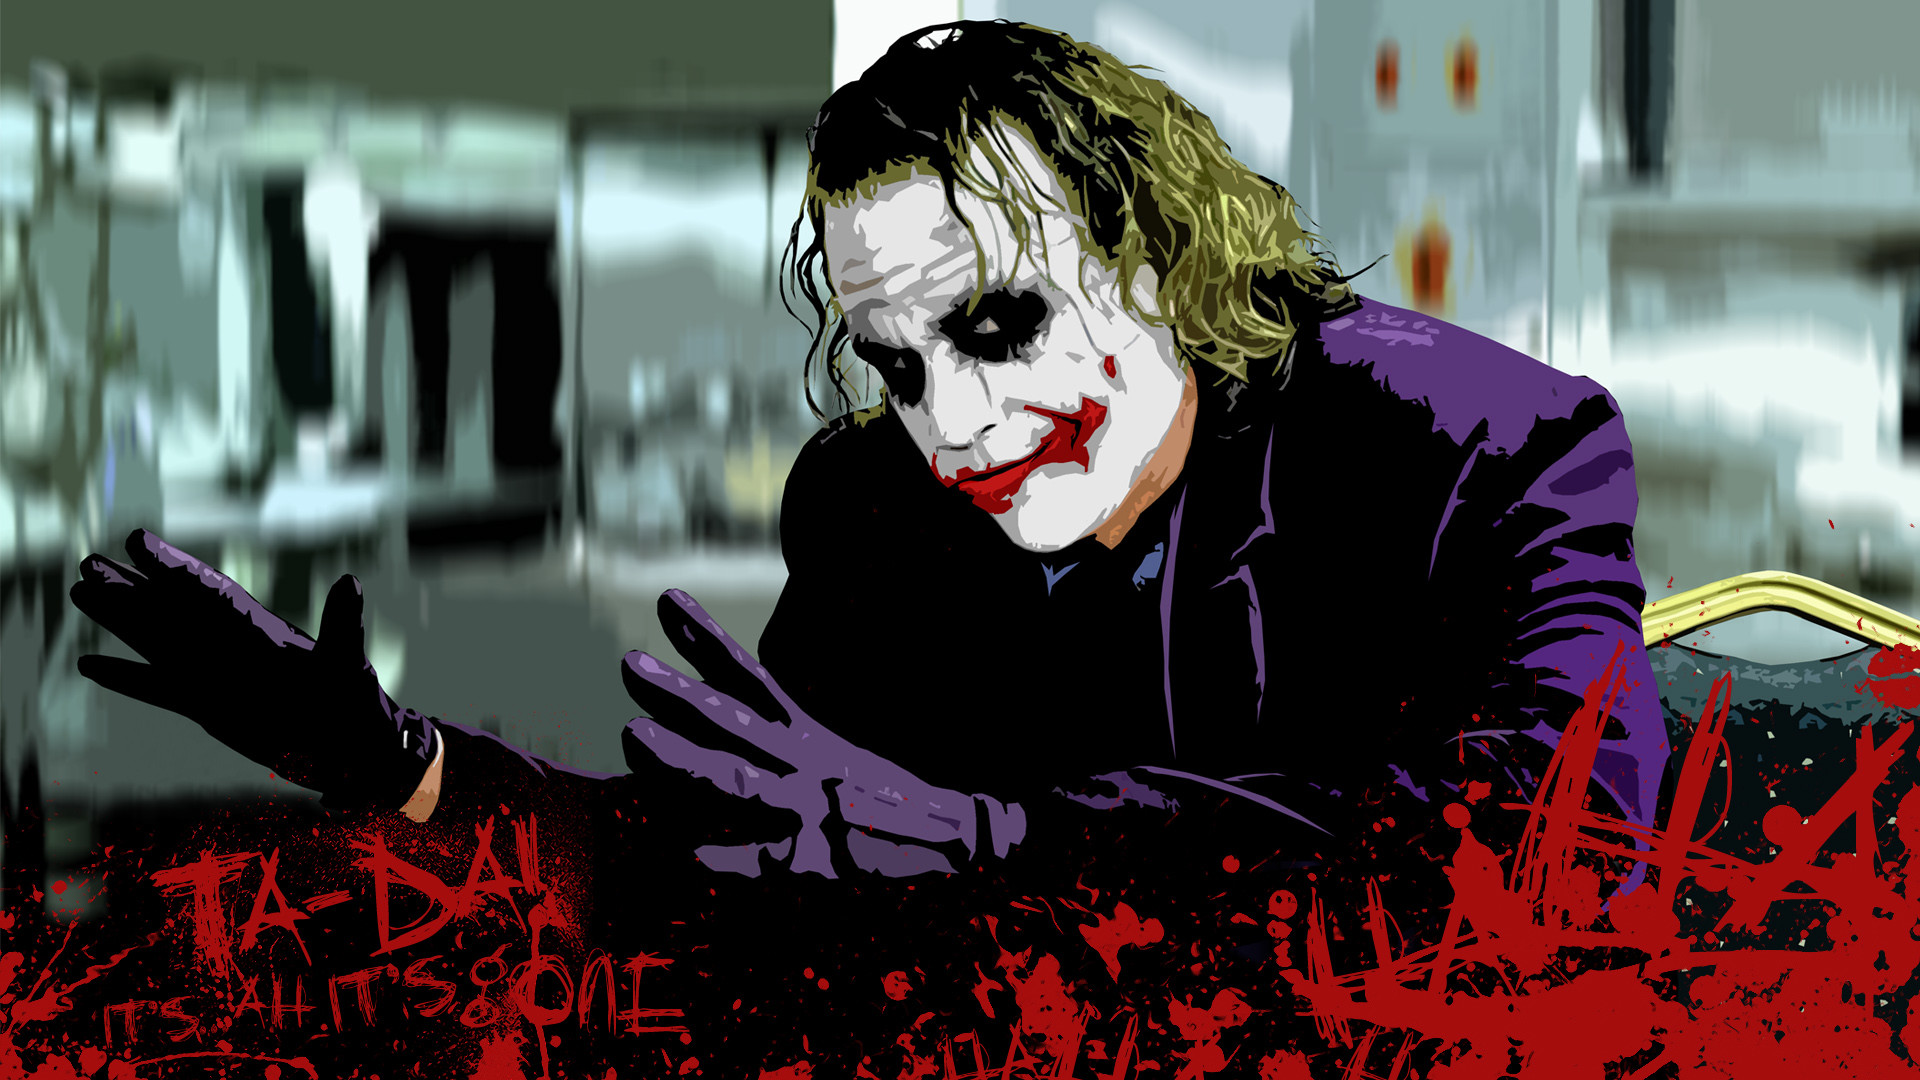 Joker – The Joker Wallpaper 28092765 – Fanpop